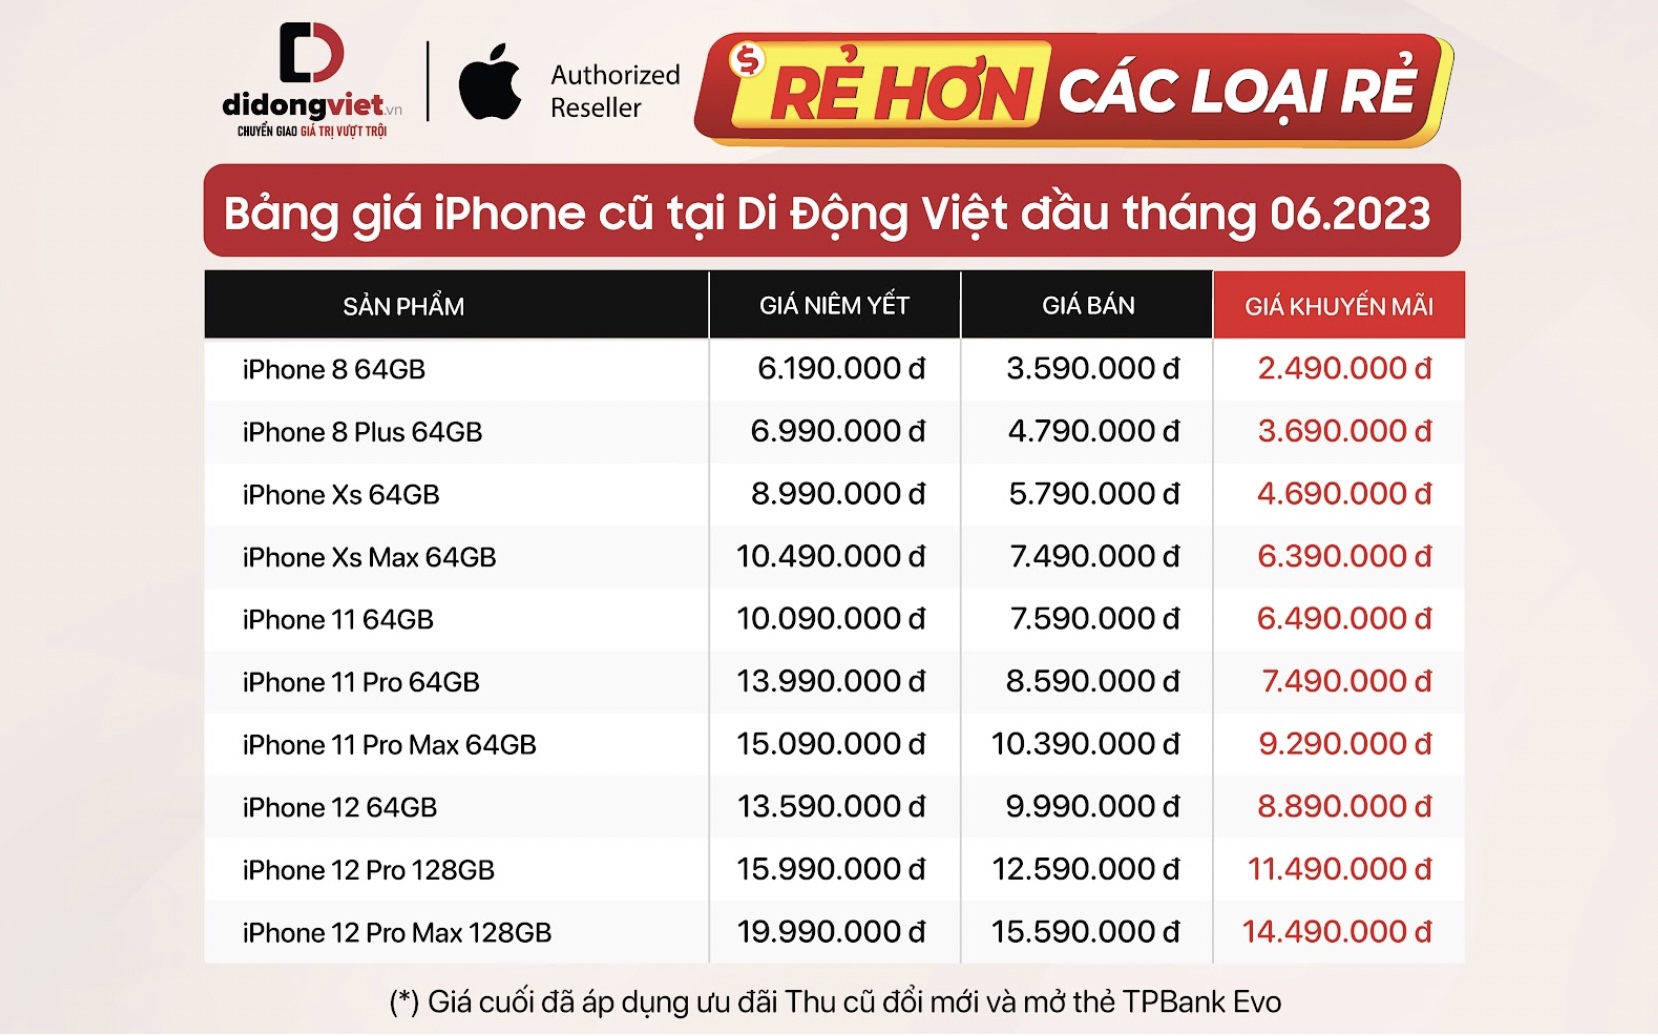 Bảng giá iPhone cũ “Rẻ hơn các loại rẻ” tại Di Động Việt đầu tháng 6/2023